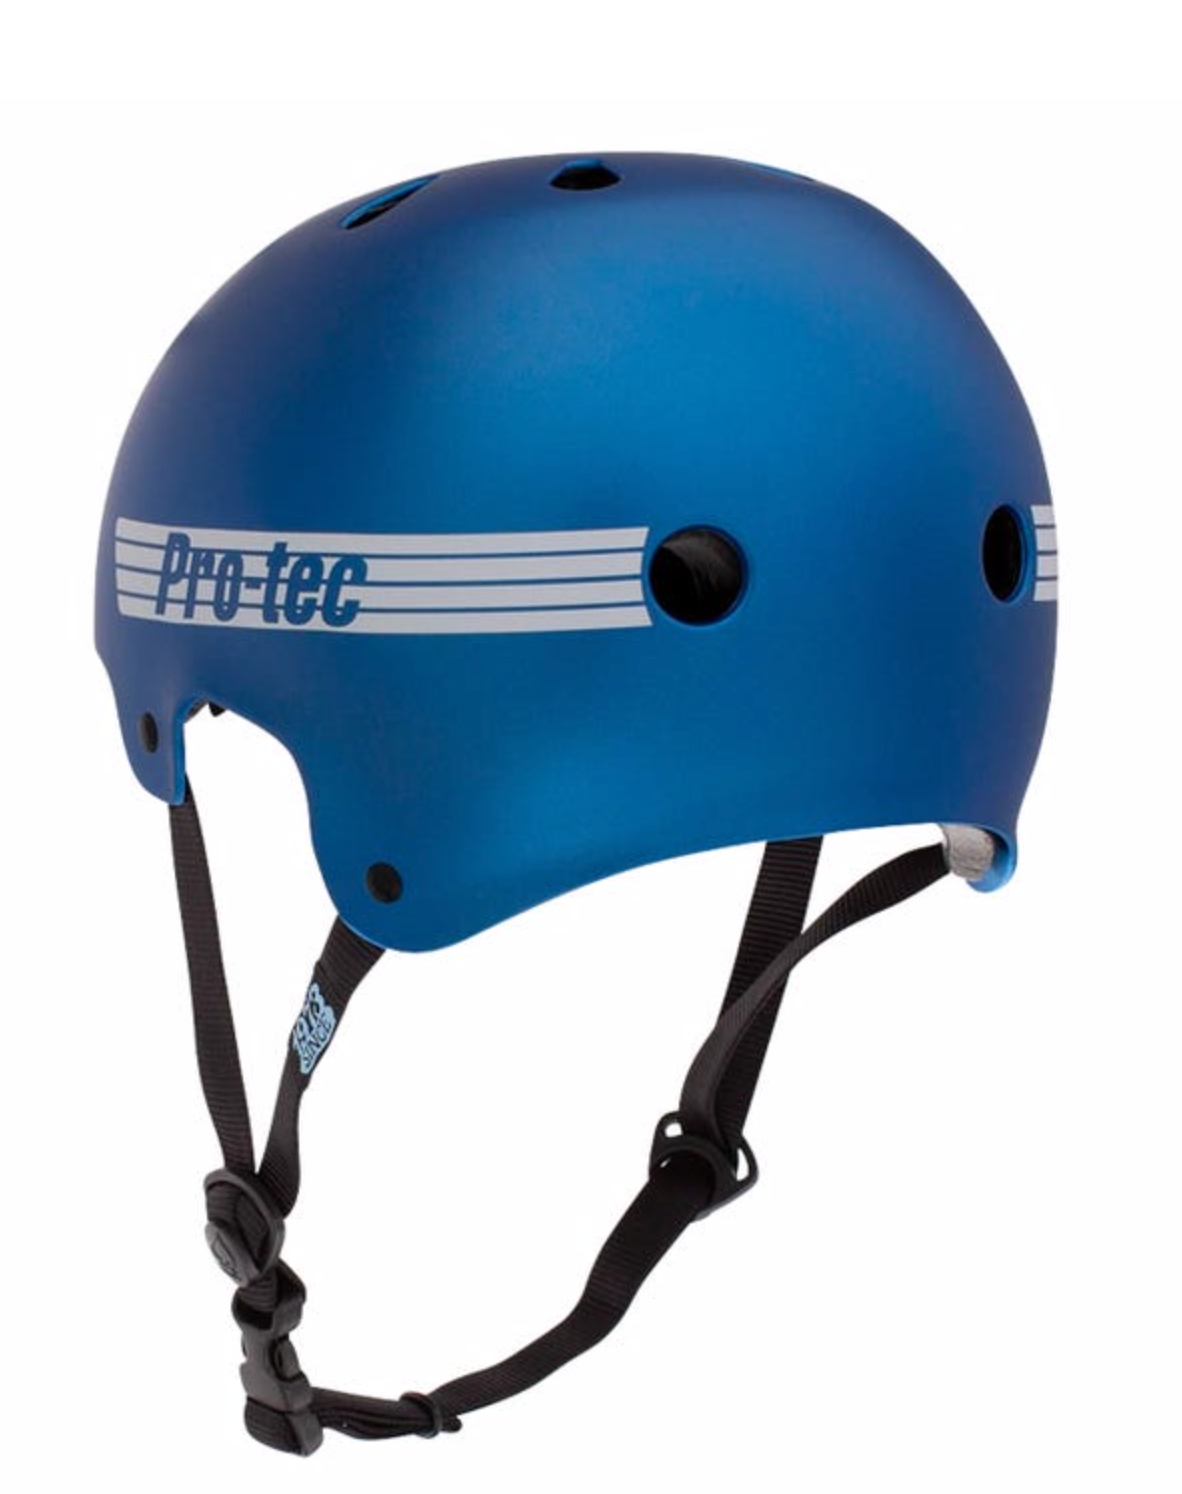 Pro-tec Old School Cert Helmet - Matte Metallic Blue